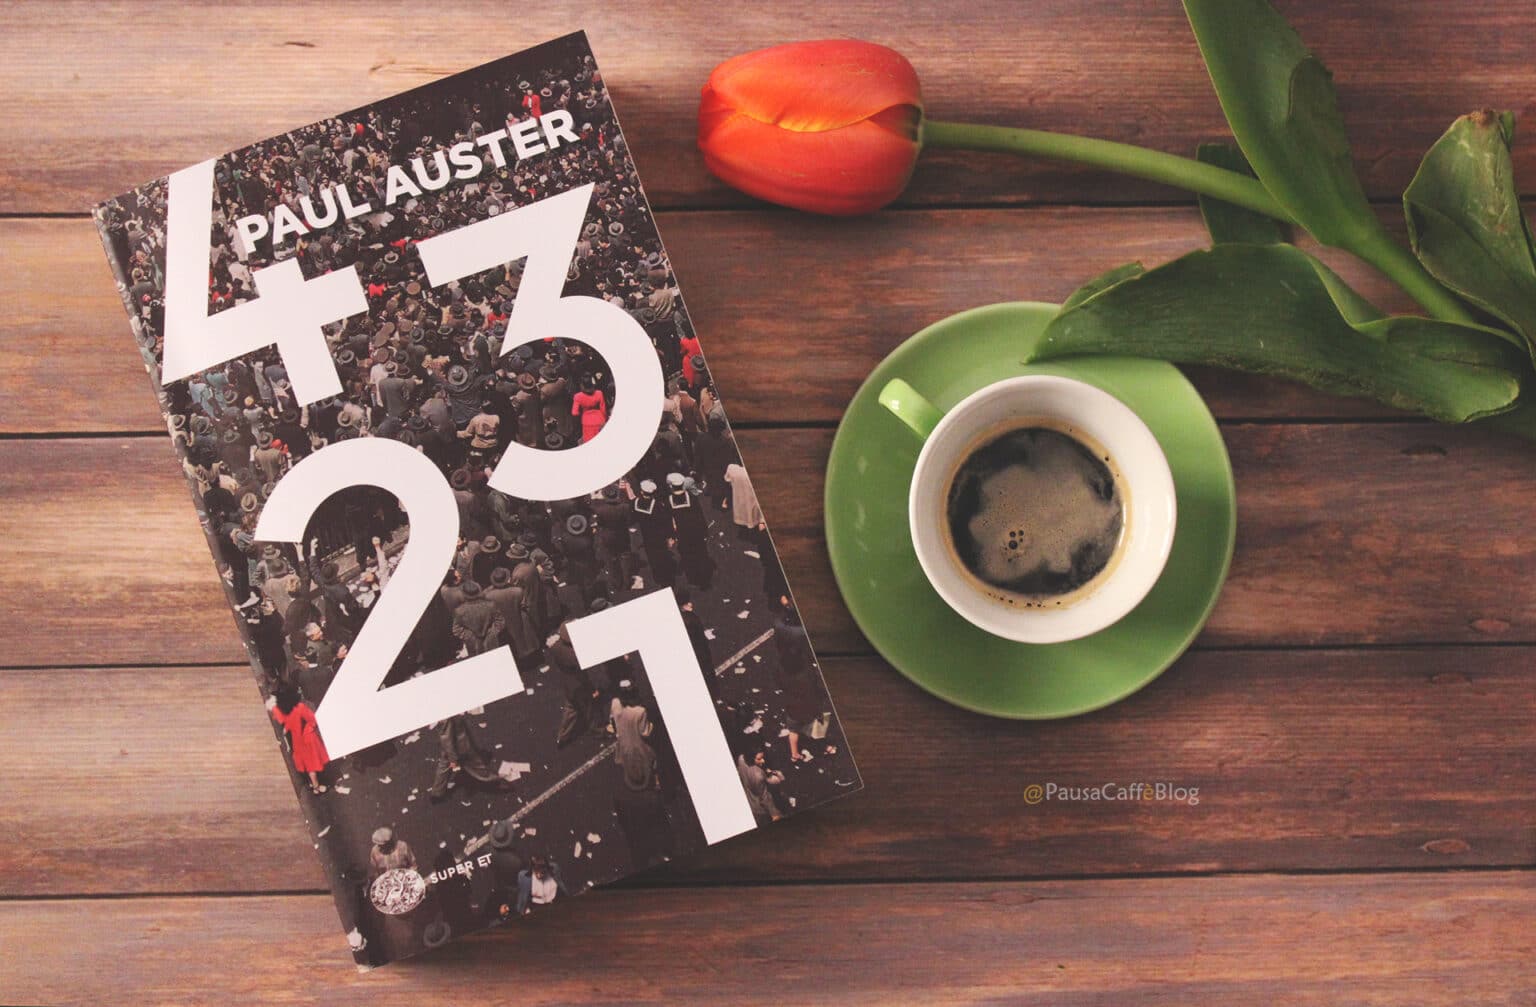 4321 di Paul Auster